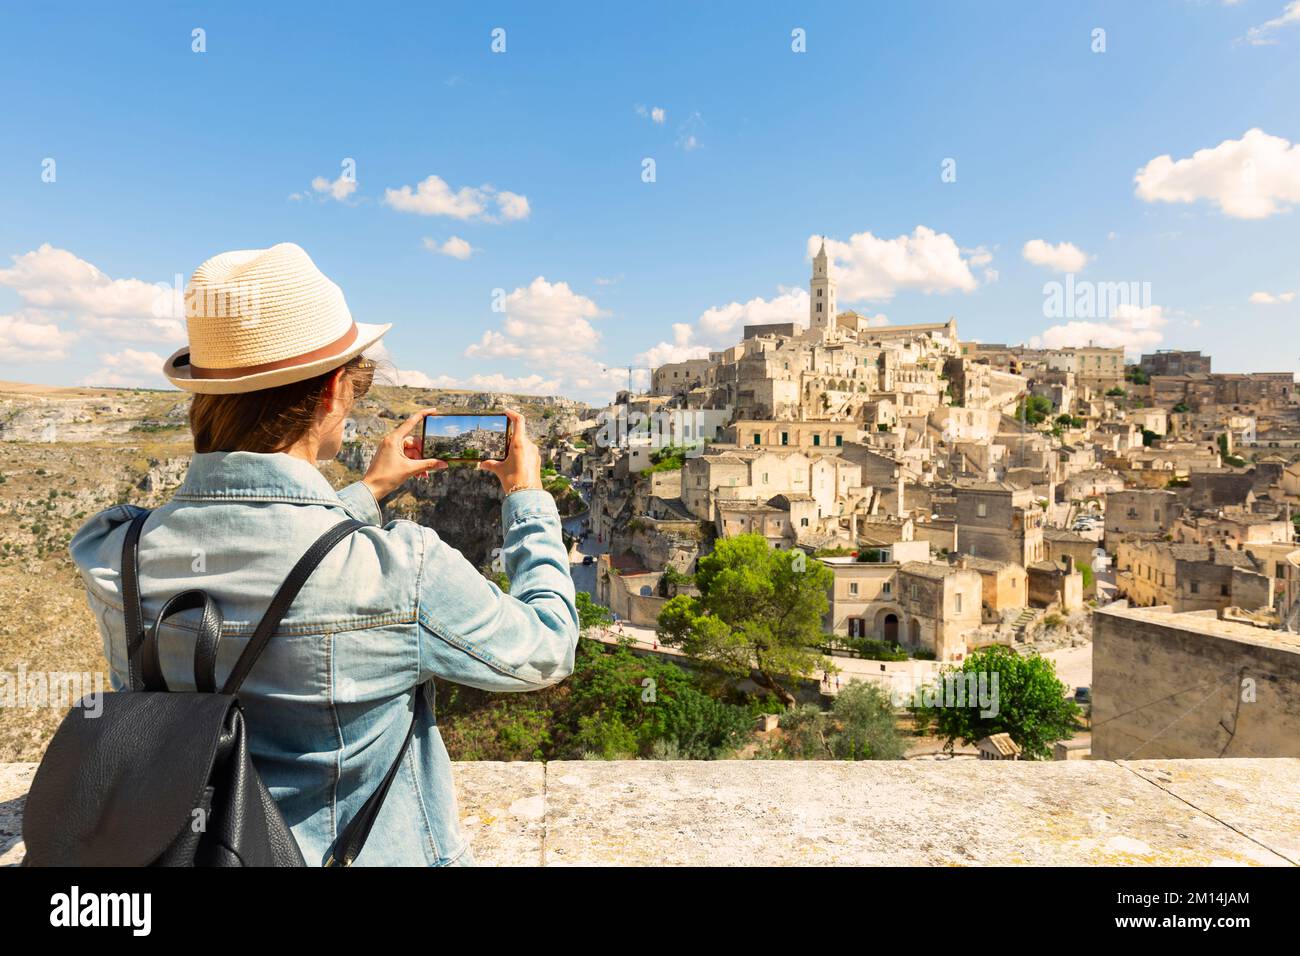 Giovane donna turista fa una foto panoramica dell'antica città di Matera in una giornata di sole, Italia. Foto Stock